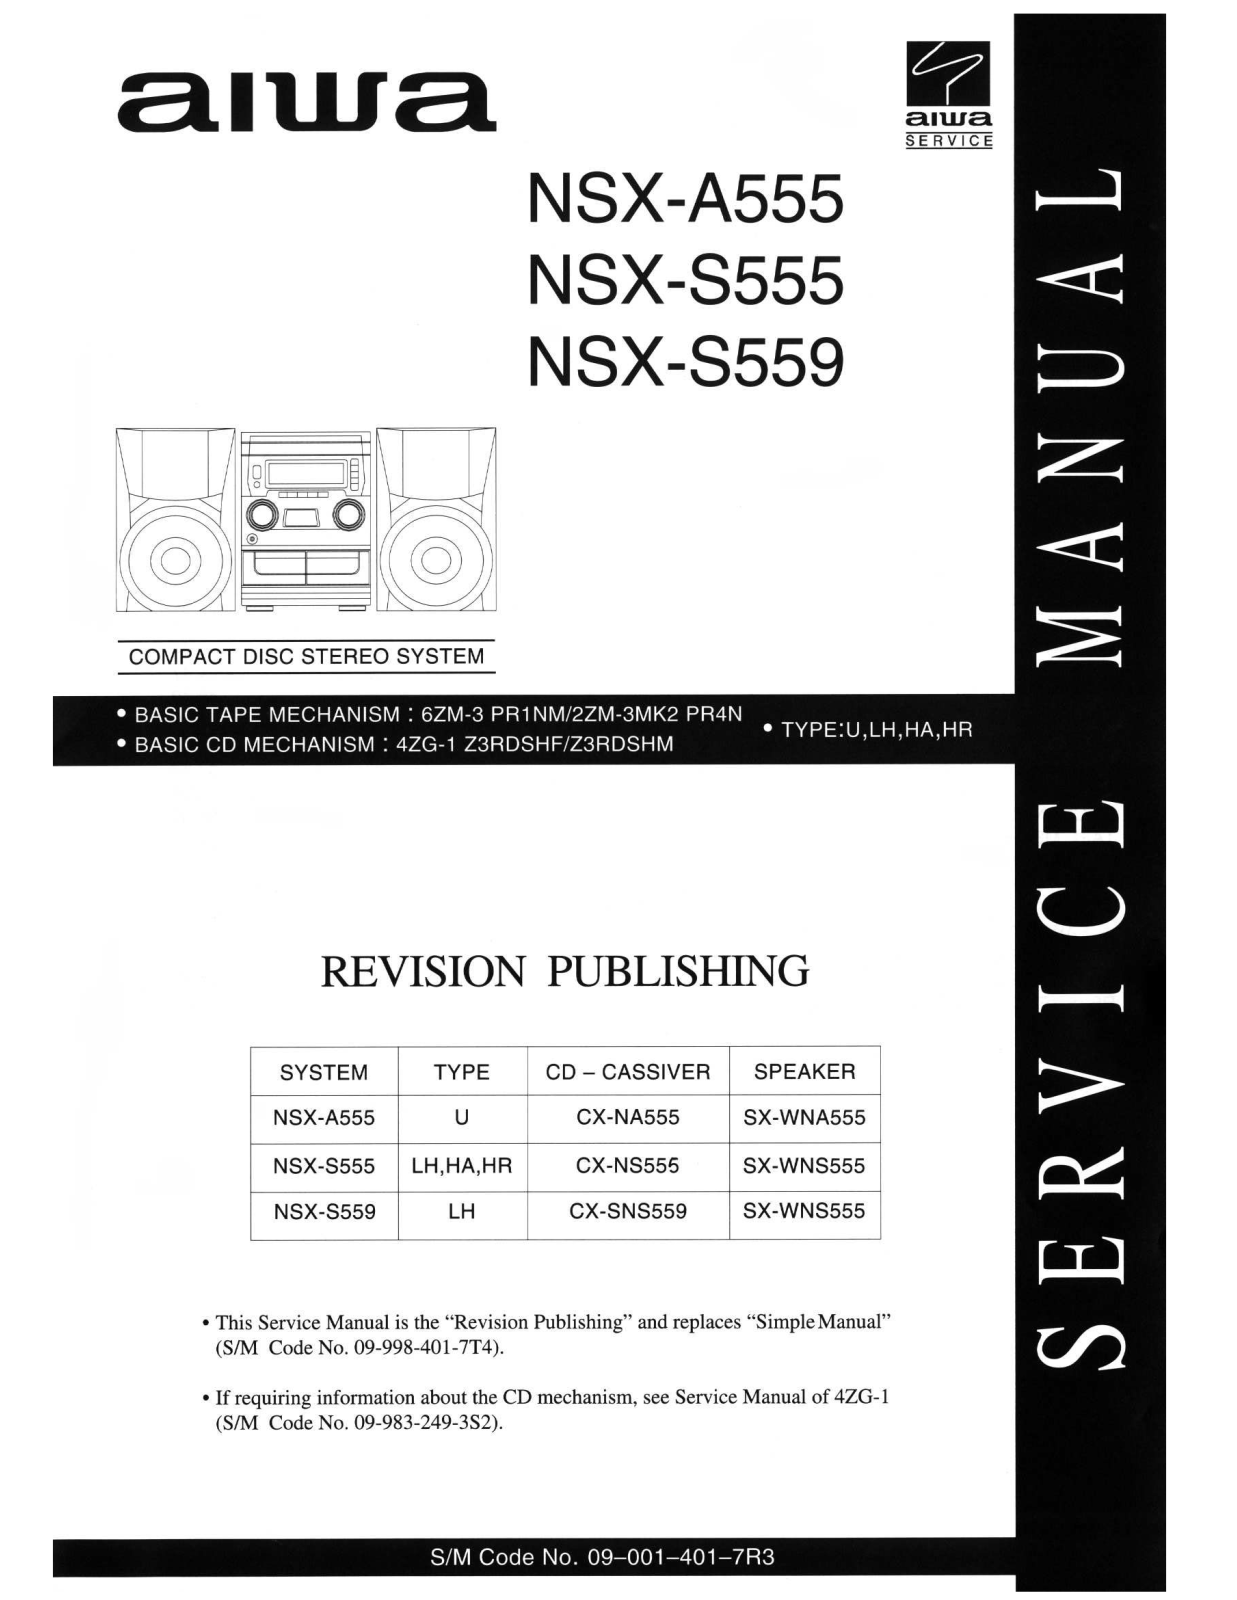 Aiwa NSX-A555, NSX-S555, NSX-S559 Schematic